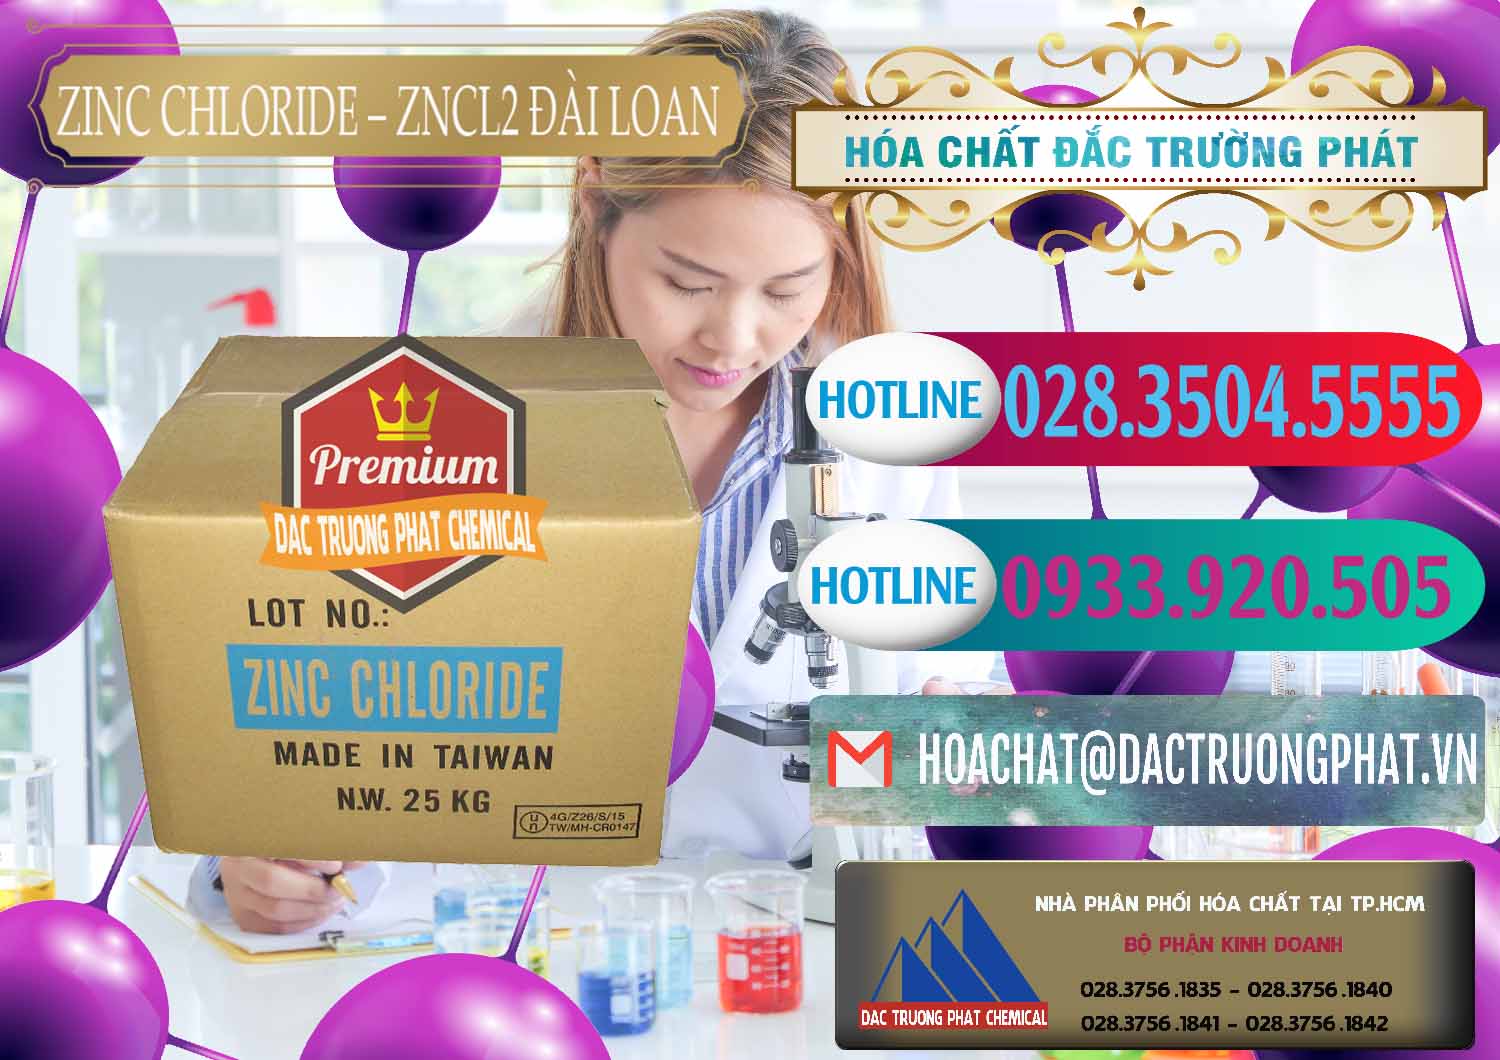 Cty bán và phân phối Zinc Chloride - ZNCL2 96% Đài Loan Taiwan - 0178 - Cung cấp và phân phối hóa chất tại TP.HCM - truongphat.vn